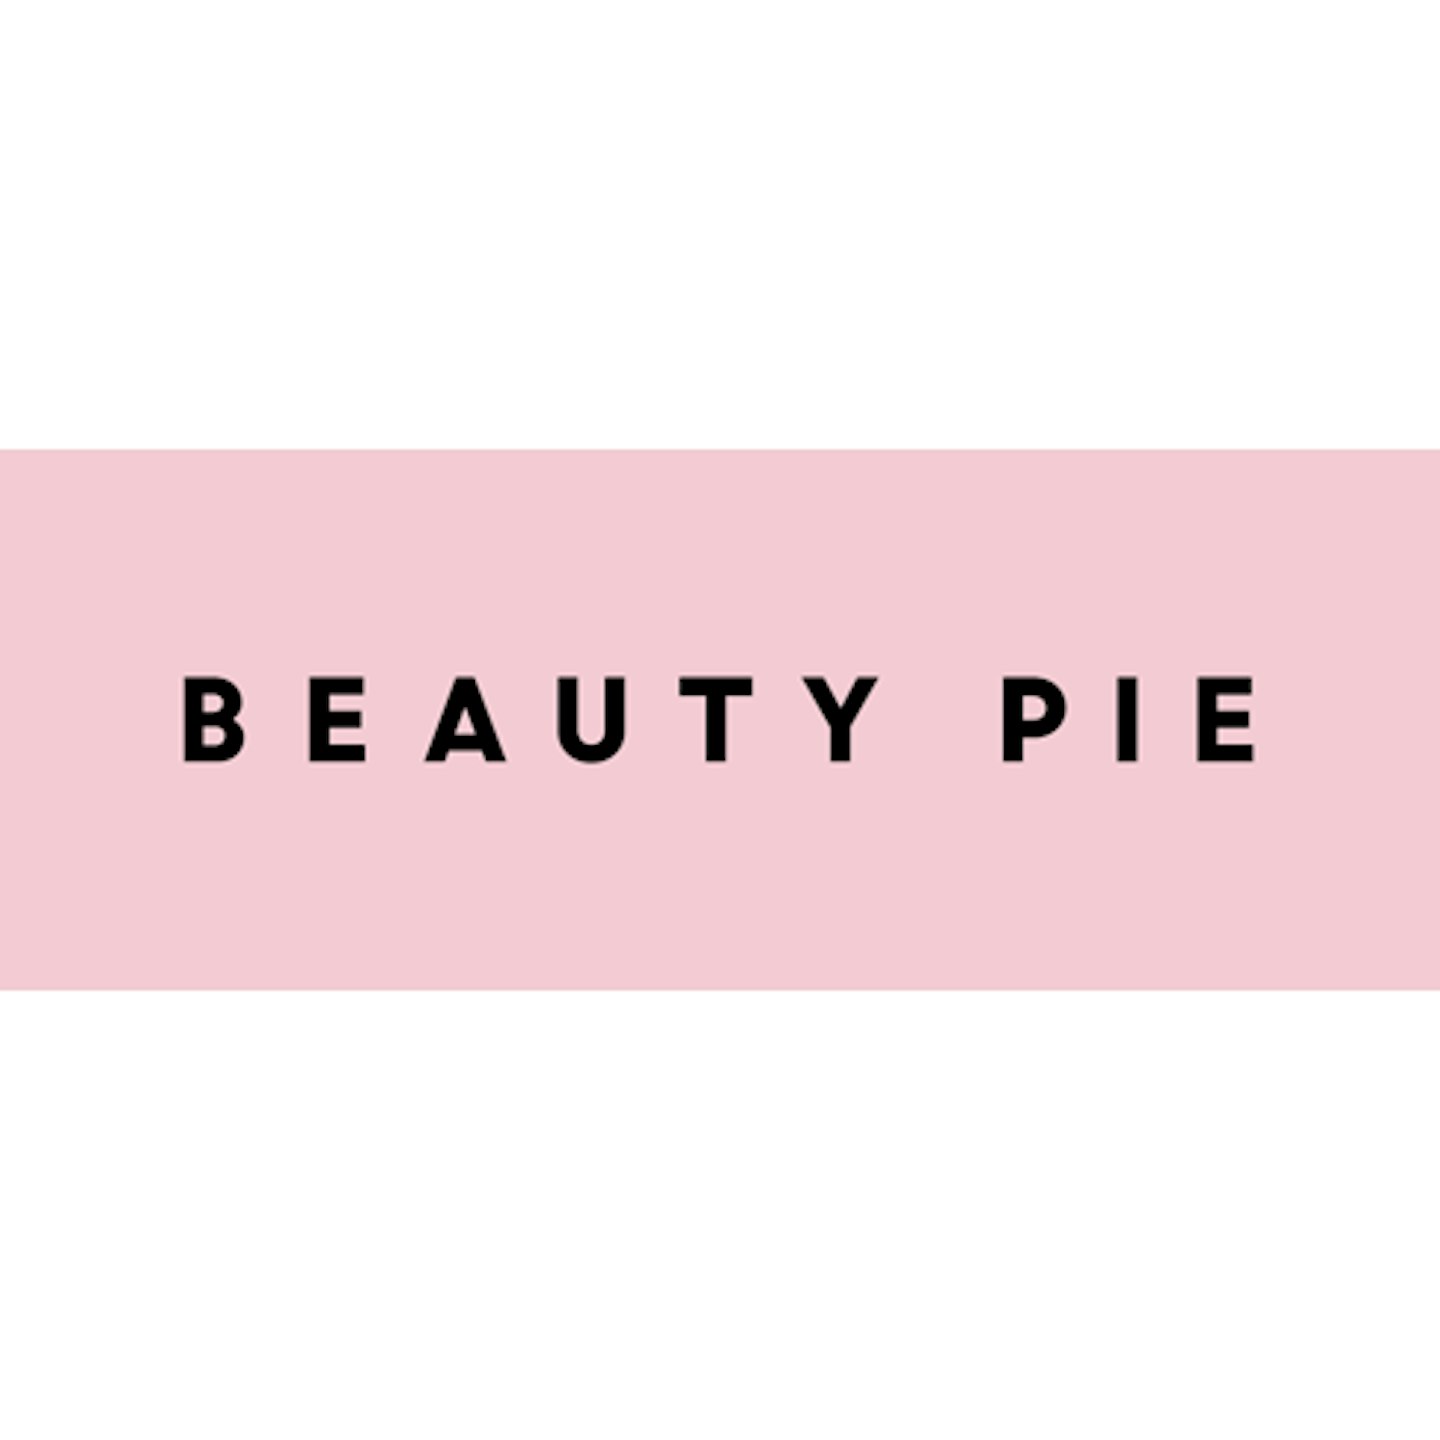 Beauty Pie logo